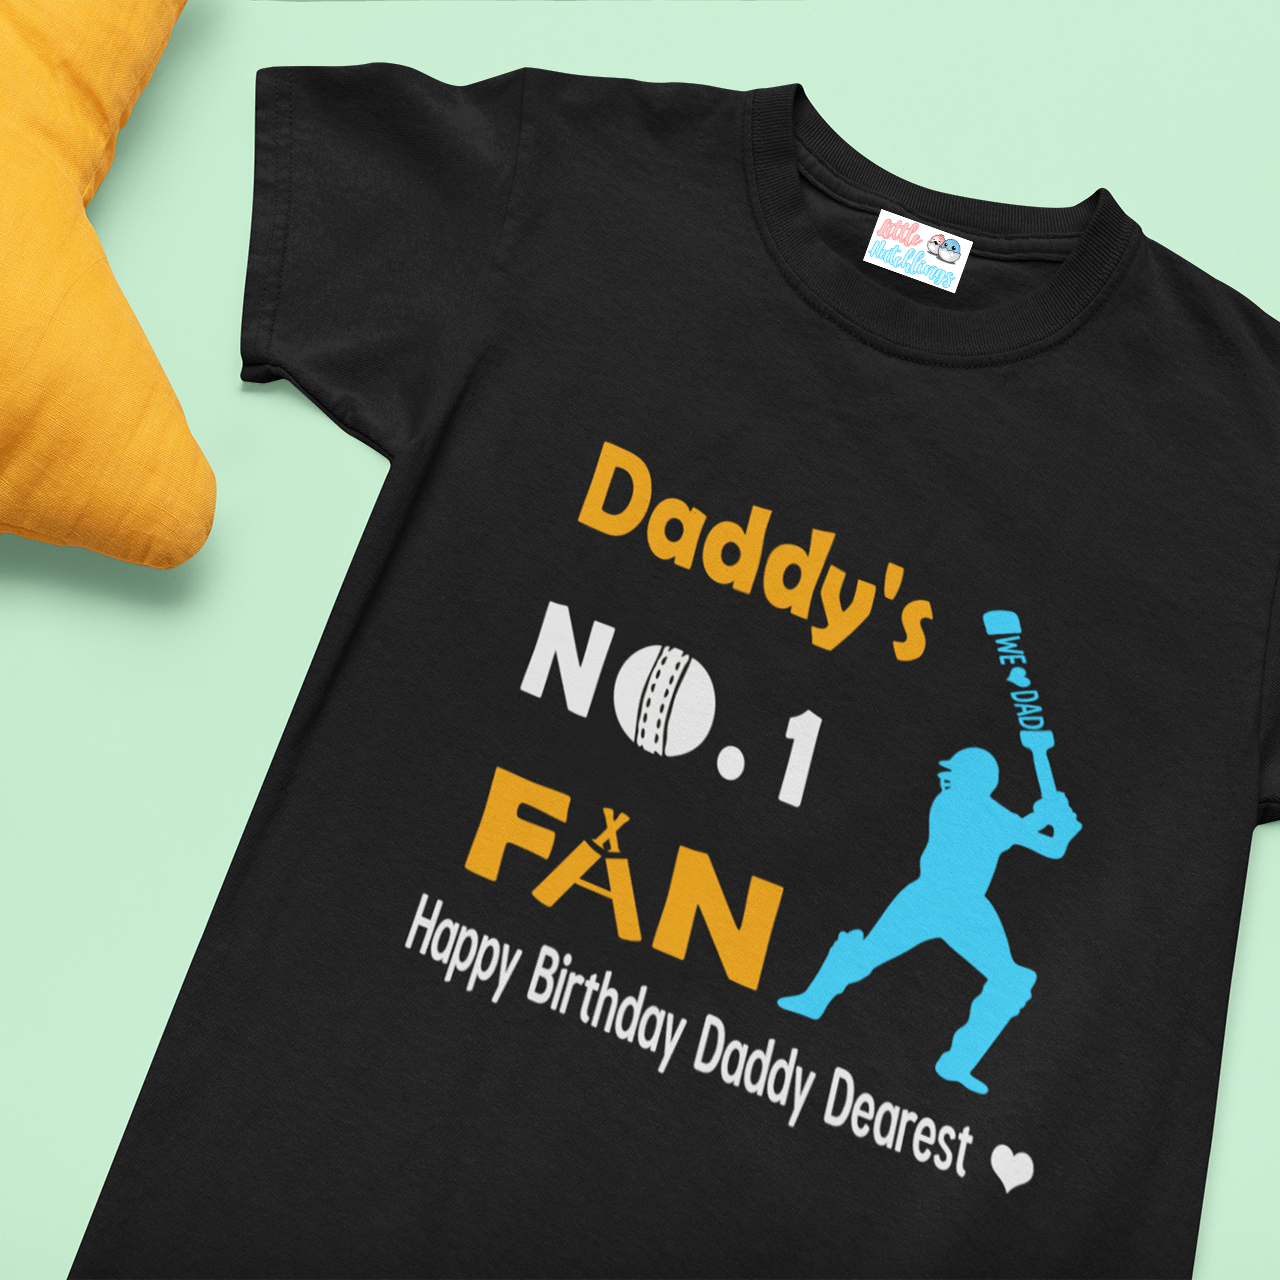 Happy Birthday Daddy - No.1 Fan - Black Tshirt